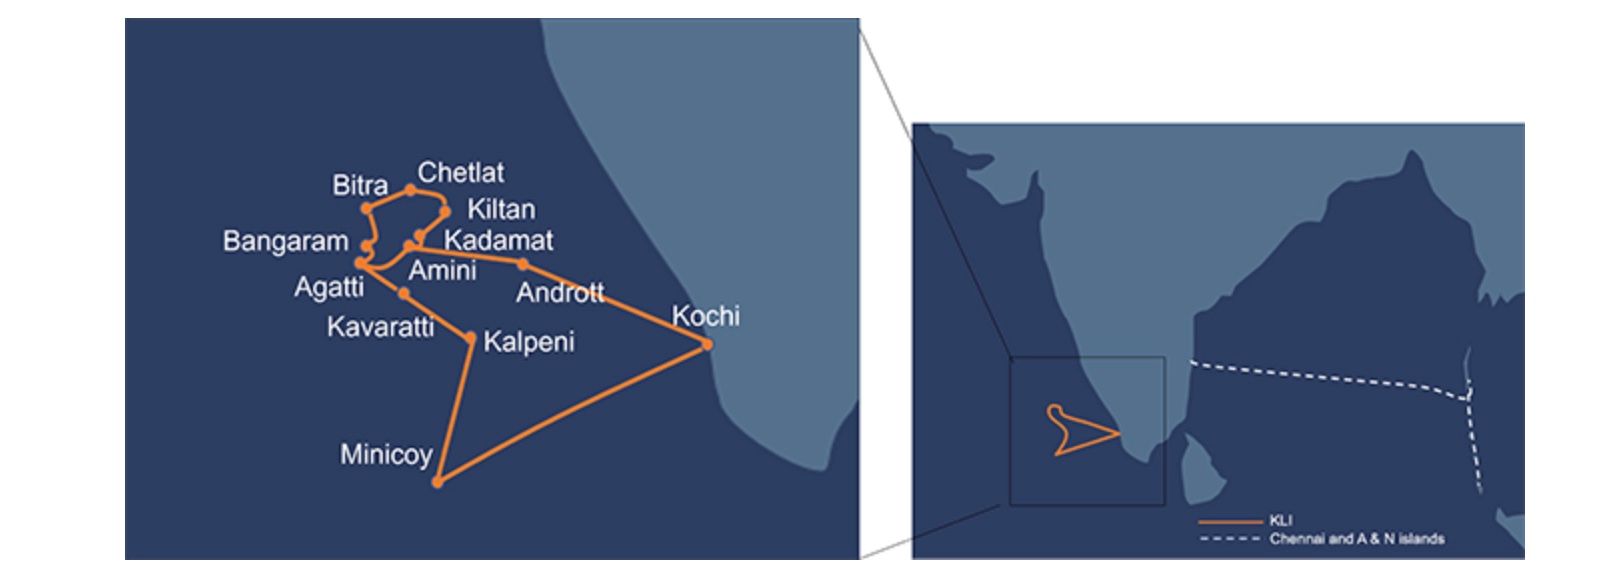 NEC finalizează sistemul de cabluri submarine pentru BSNL din India, care conectează Kochi și insulele Lakshadweep